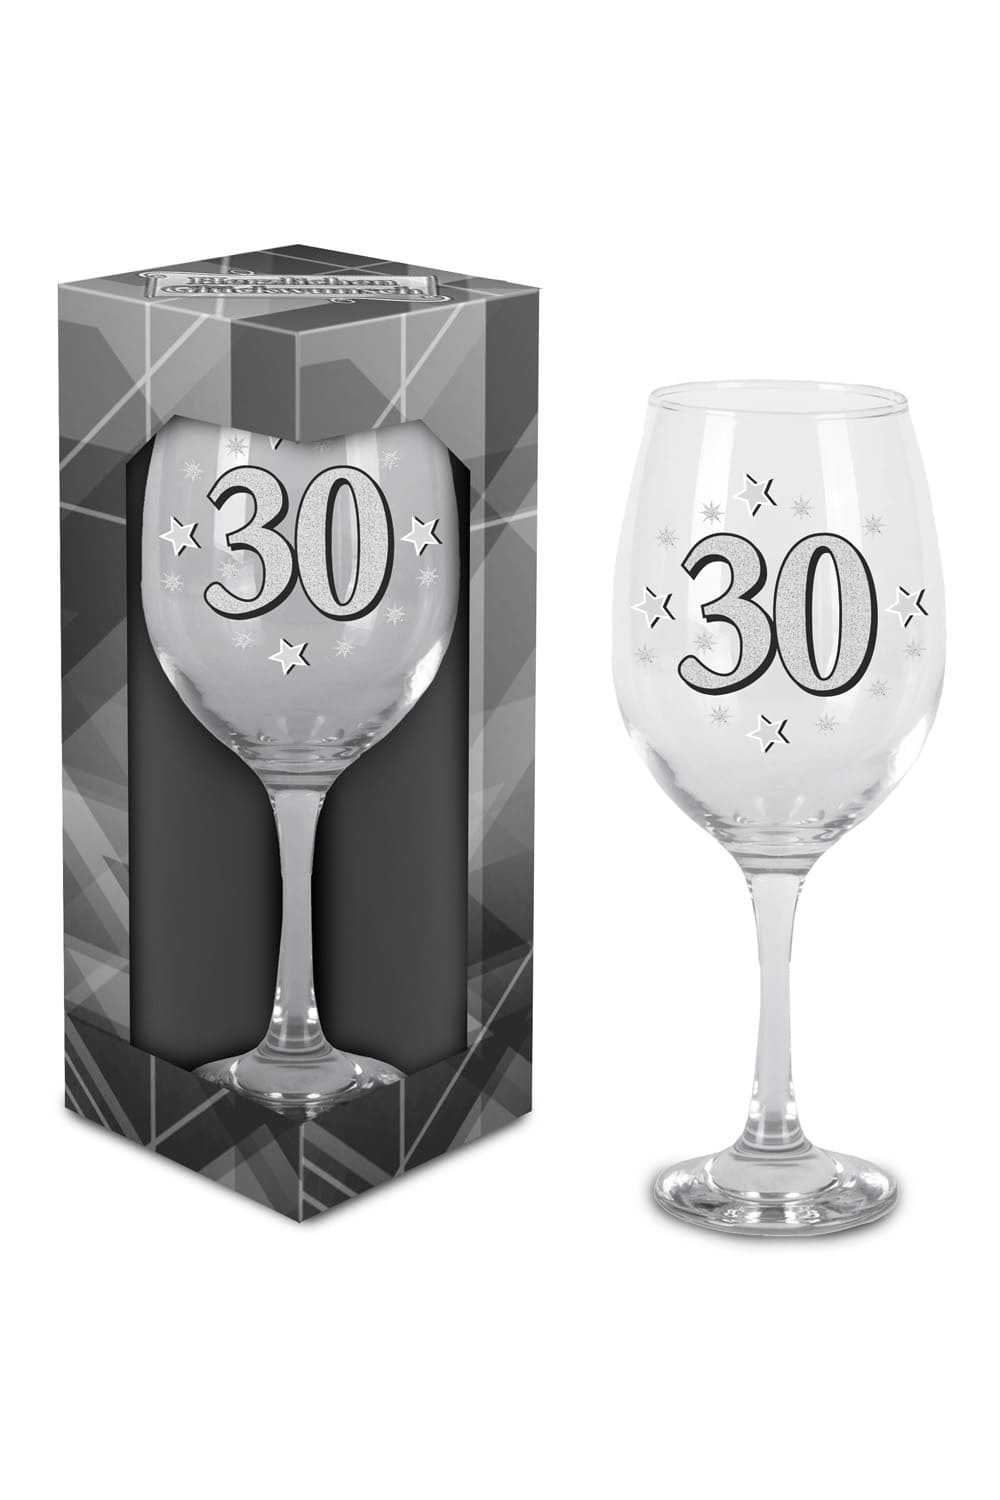 Dieses schoene Glas ist bedruckt mit der Zahl 30. Grosses Weinglas oder Cocktailglas zum 30. Geburtstag. Einzel verpackt in einem Geschenkkarton. Einfach ein kreatives Geschenk zum 30. Geburtstag oder zu einem Jubilaeum! 